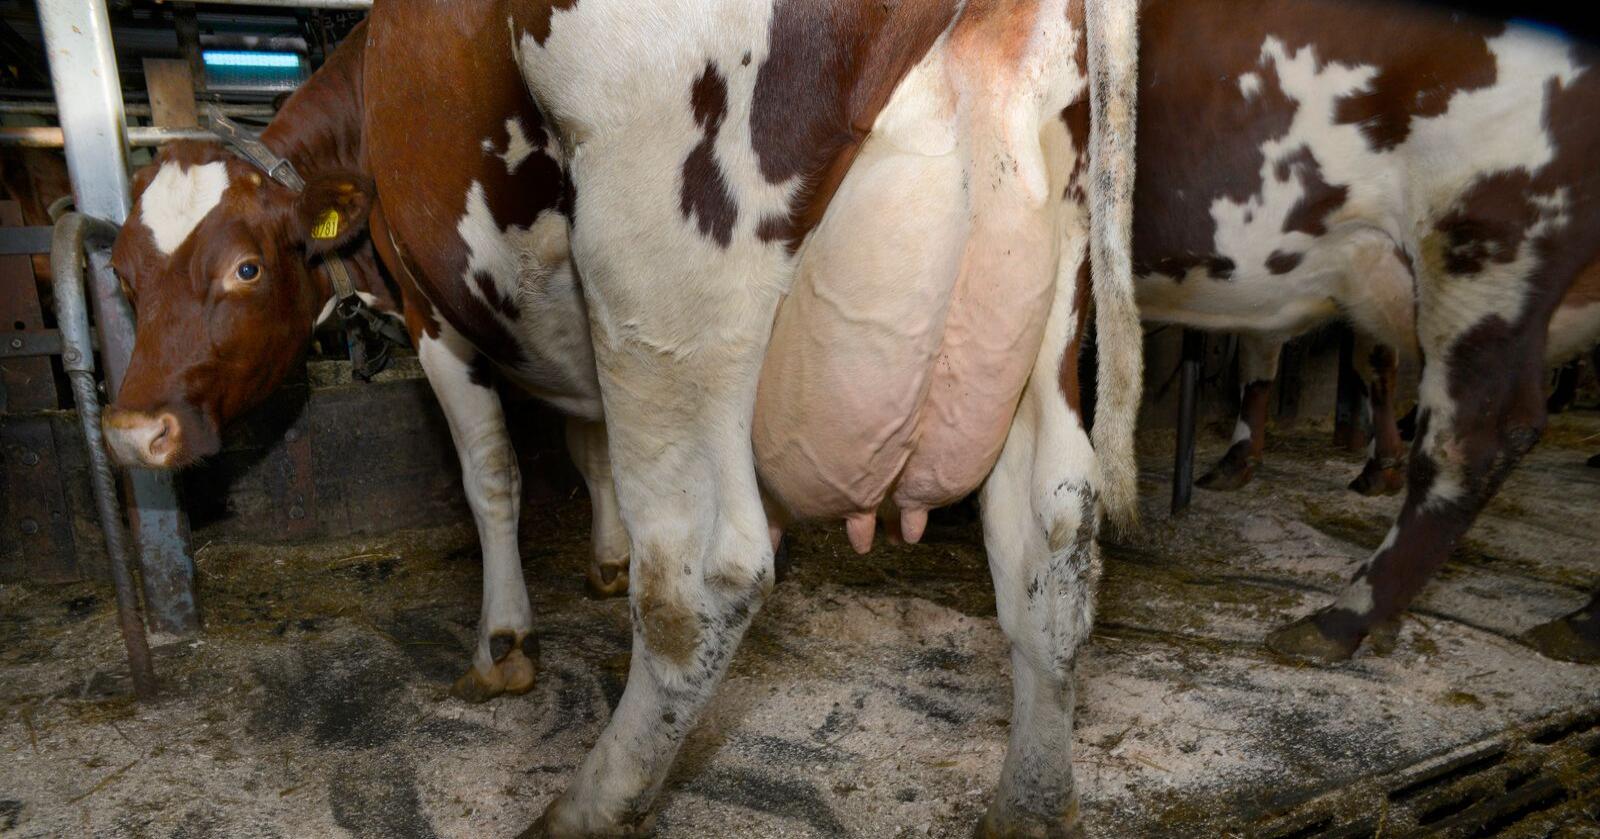 Ubehandlet melk fra kyr kan ha mange bakterier som kan gi sykdom hos mennesker. Foto: Mariann Tvete